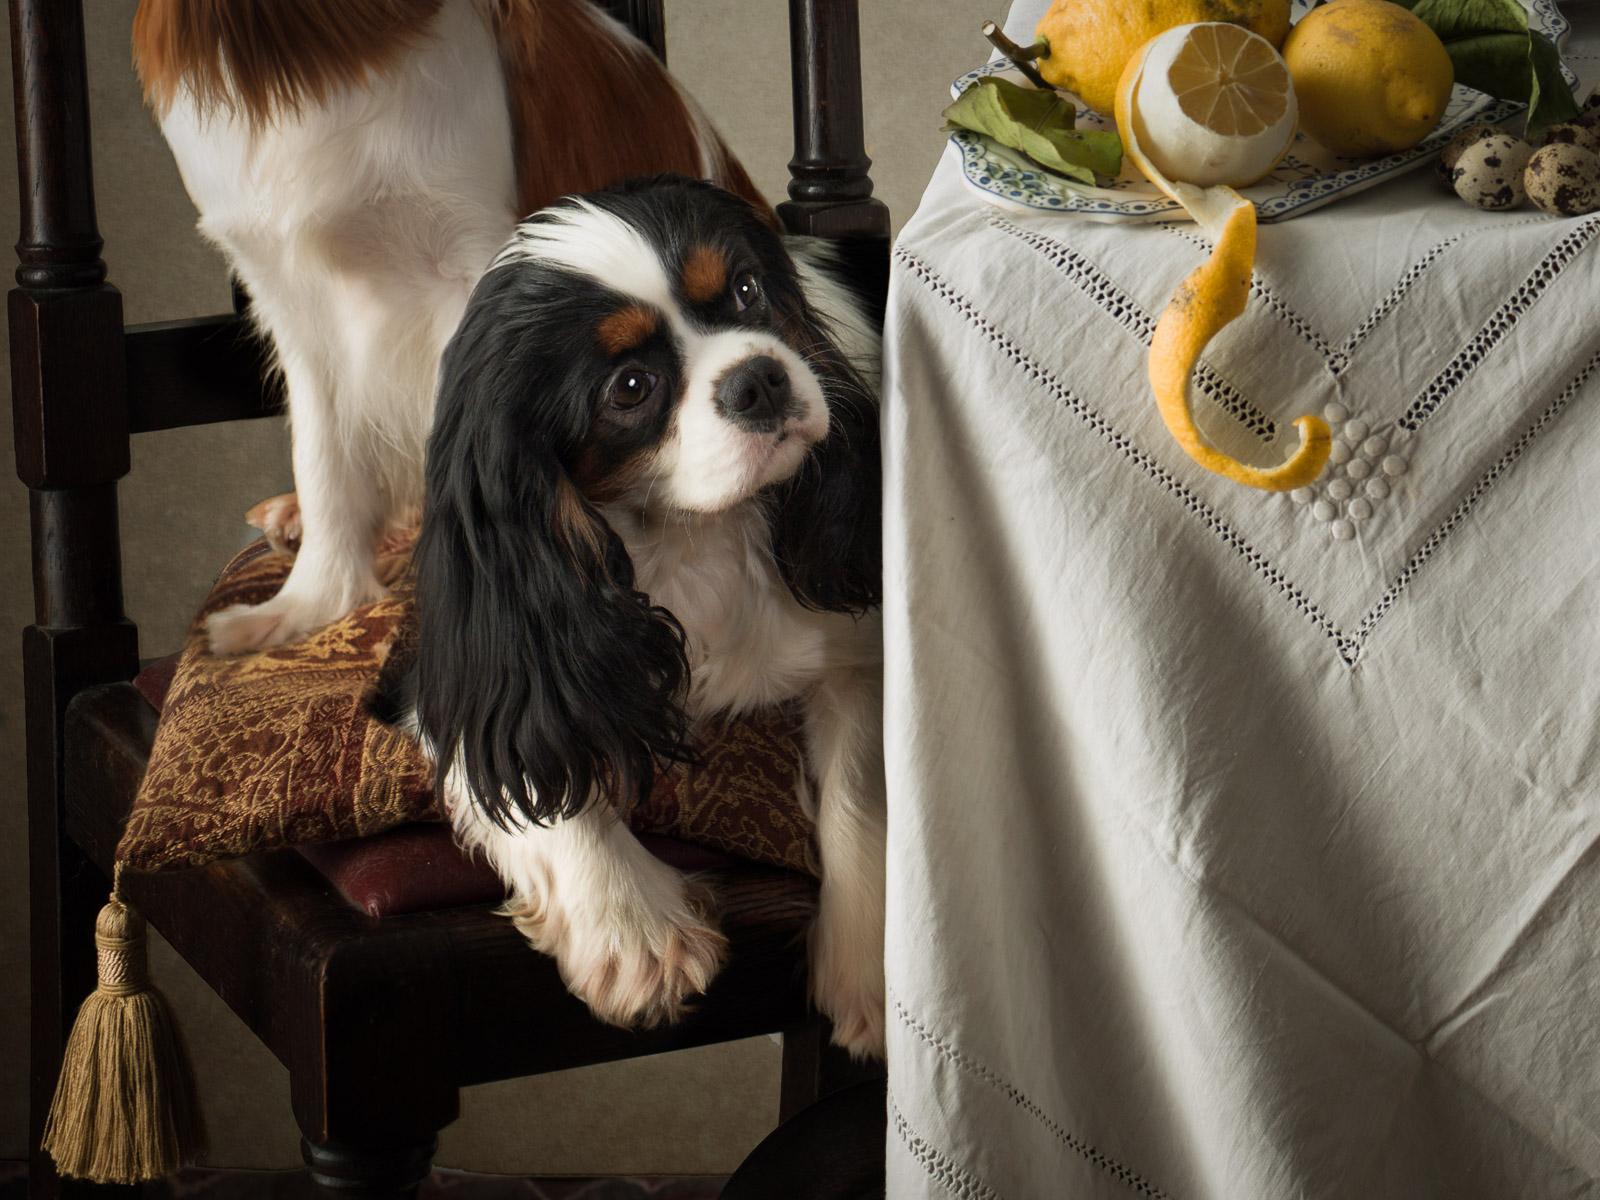 Dog Dutch #3 King Charles Spaniels - Animal signé, édition limitée contemporaine - Photograph de Tim Platt